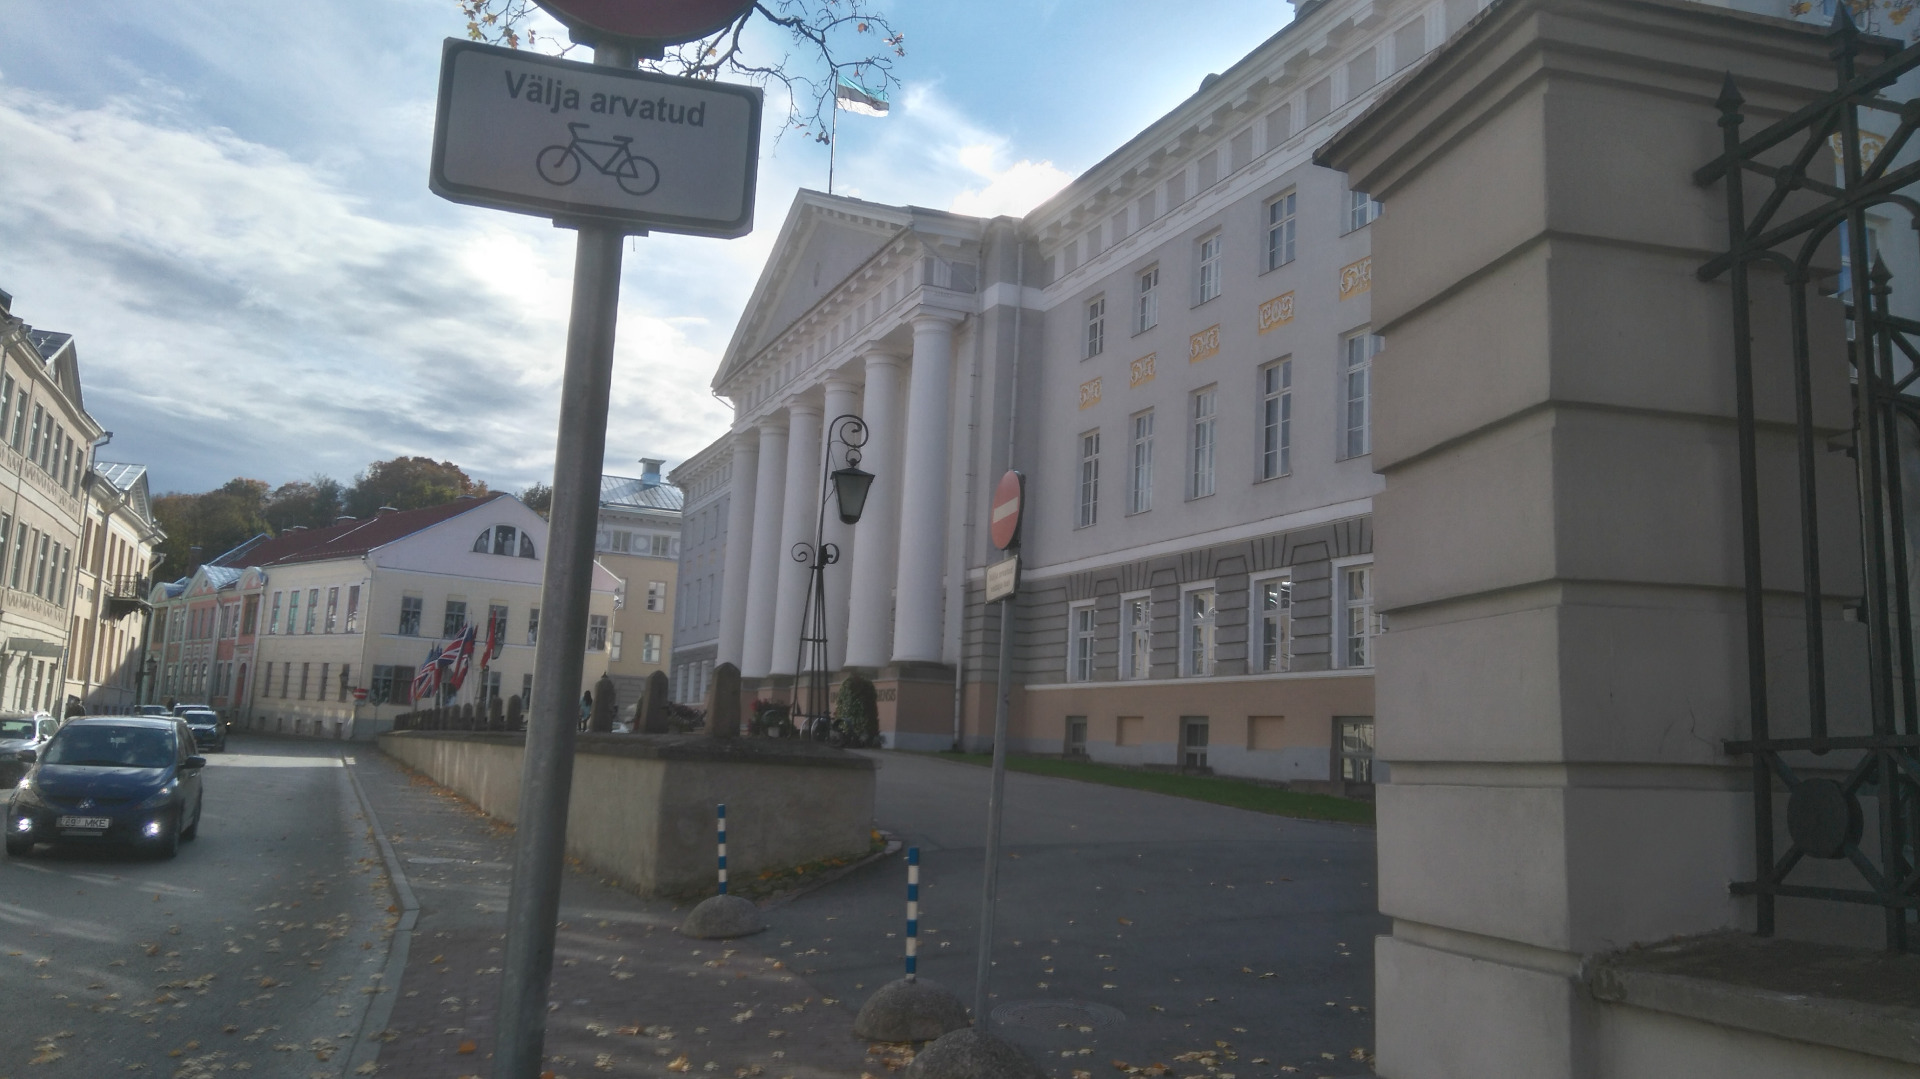 Tartu, Tartu Ülikooli peahoone rephoto